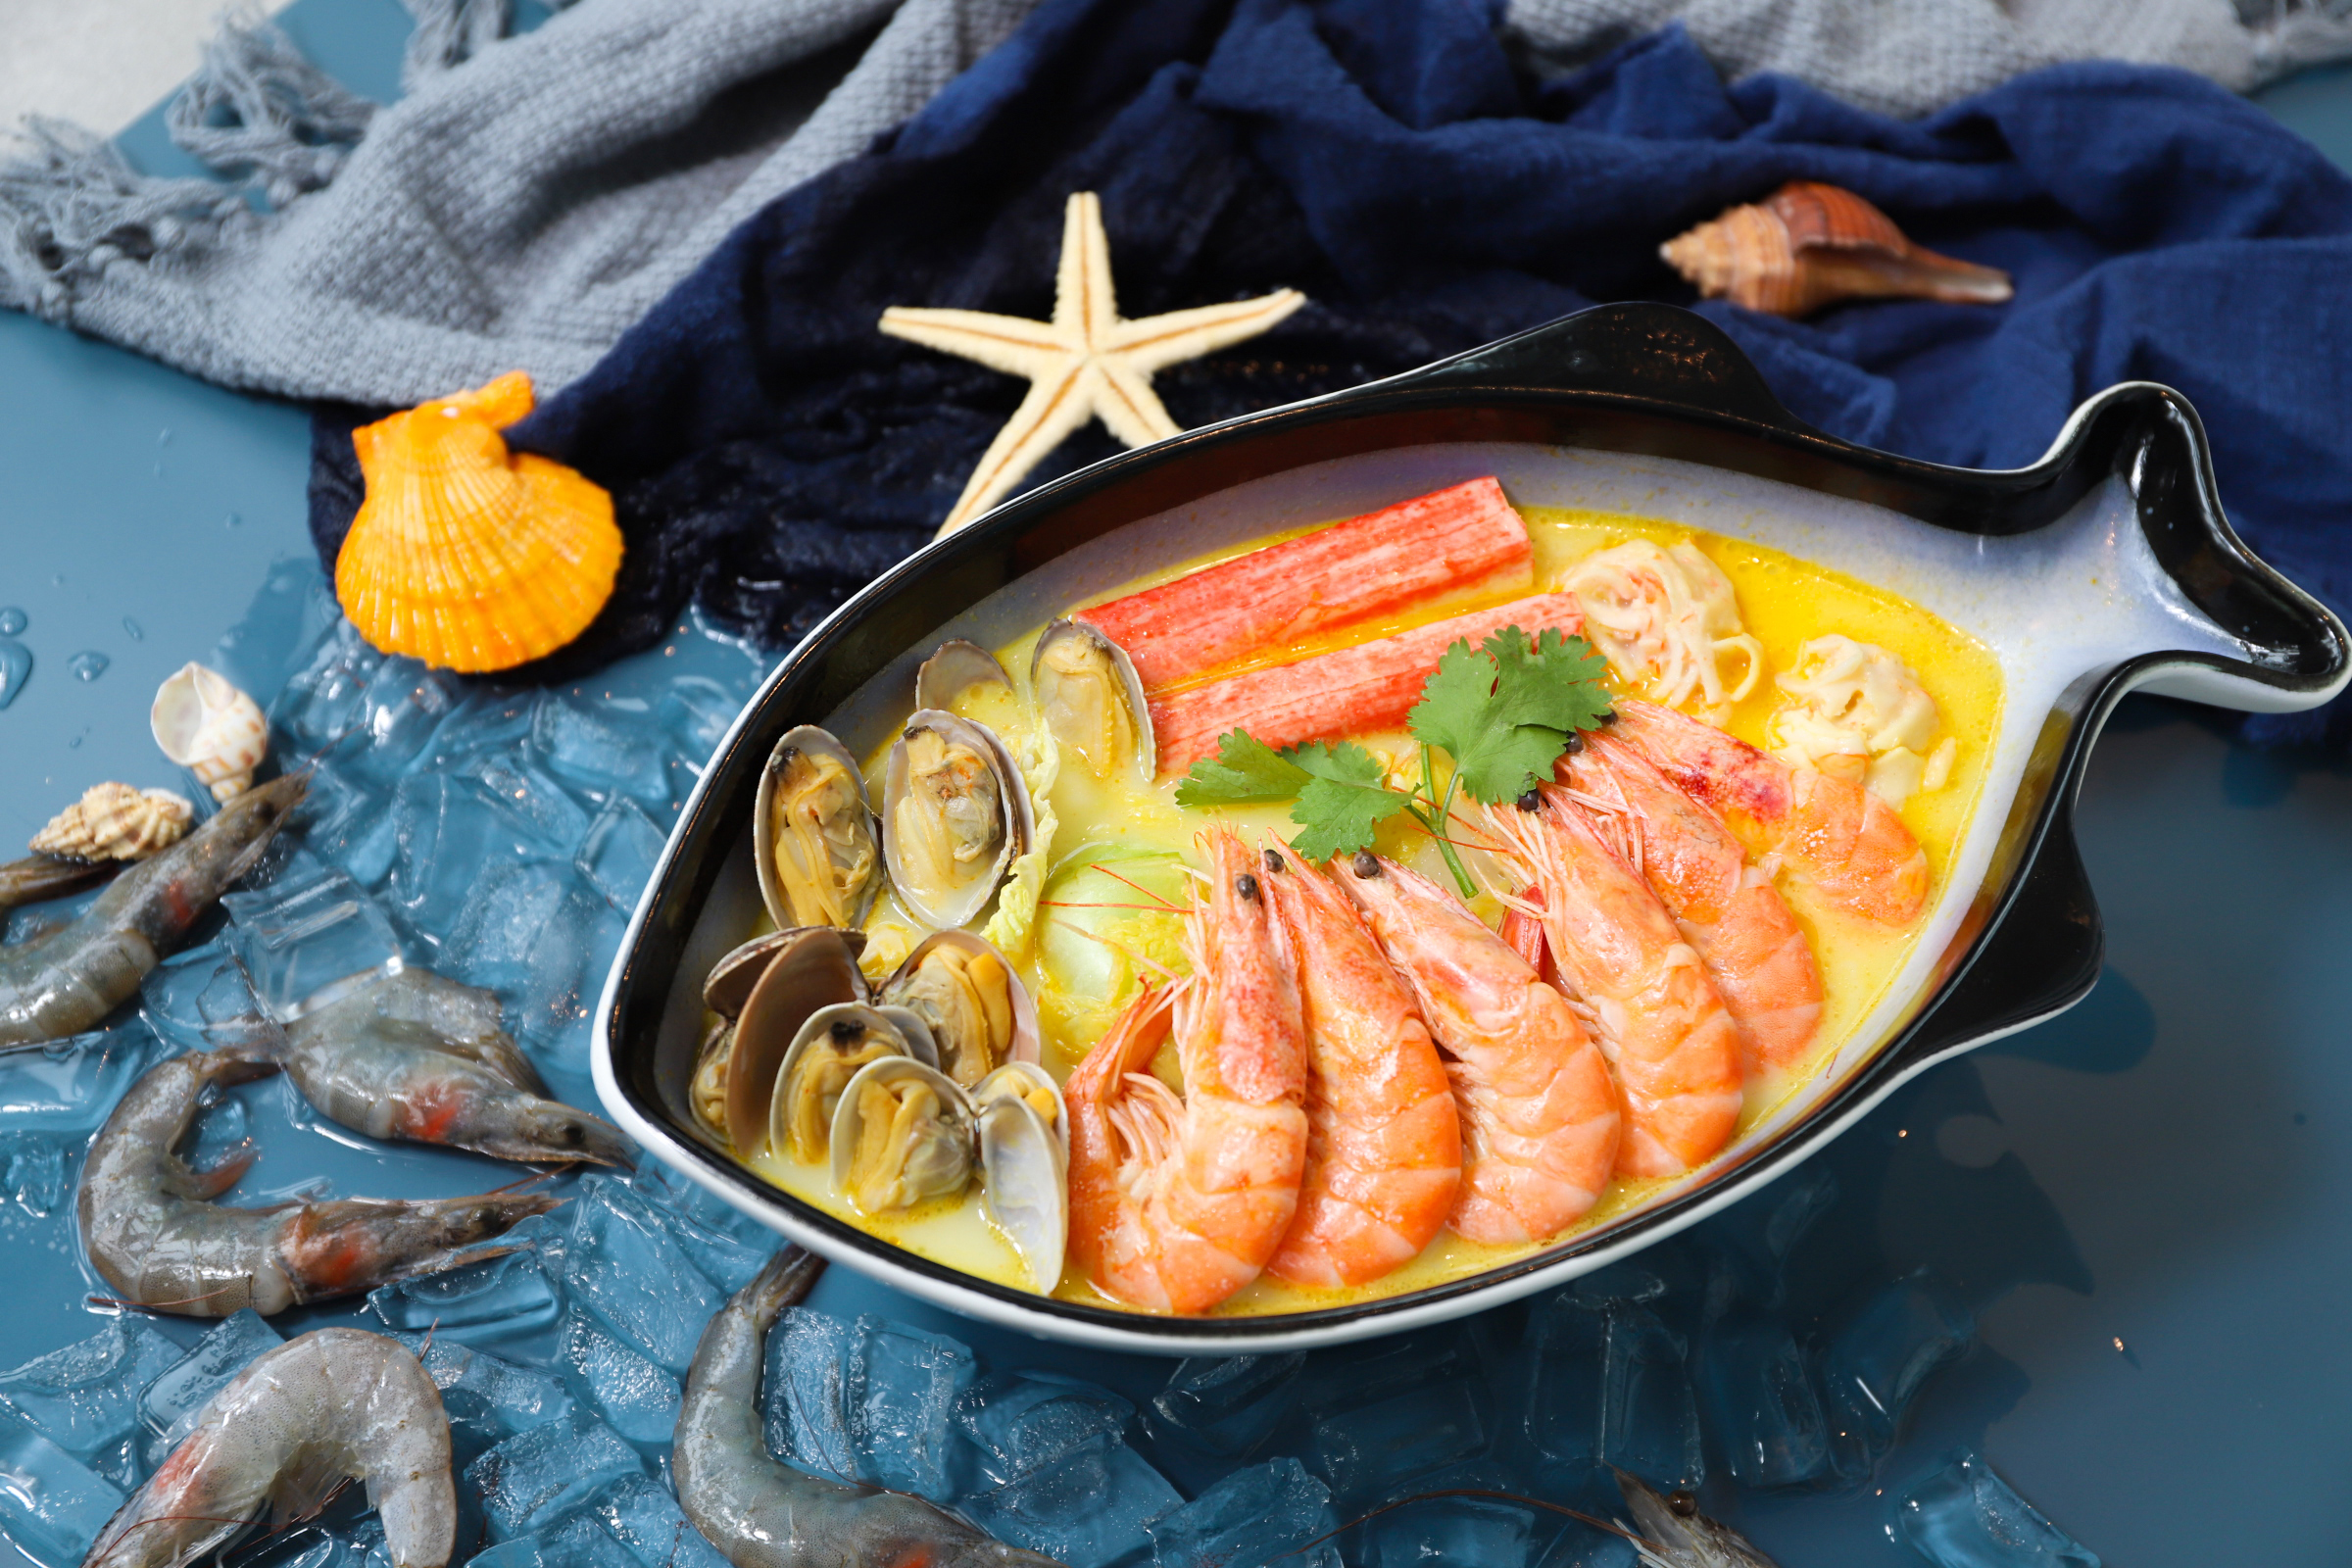 虾米虾面:一碗海鲜焖面打破格局,带来全新的餐饮味觉